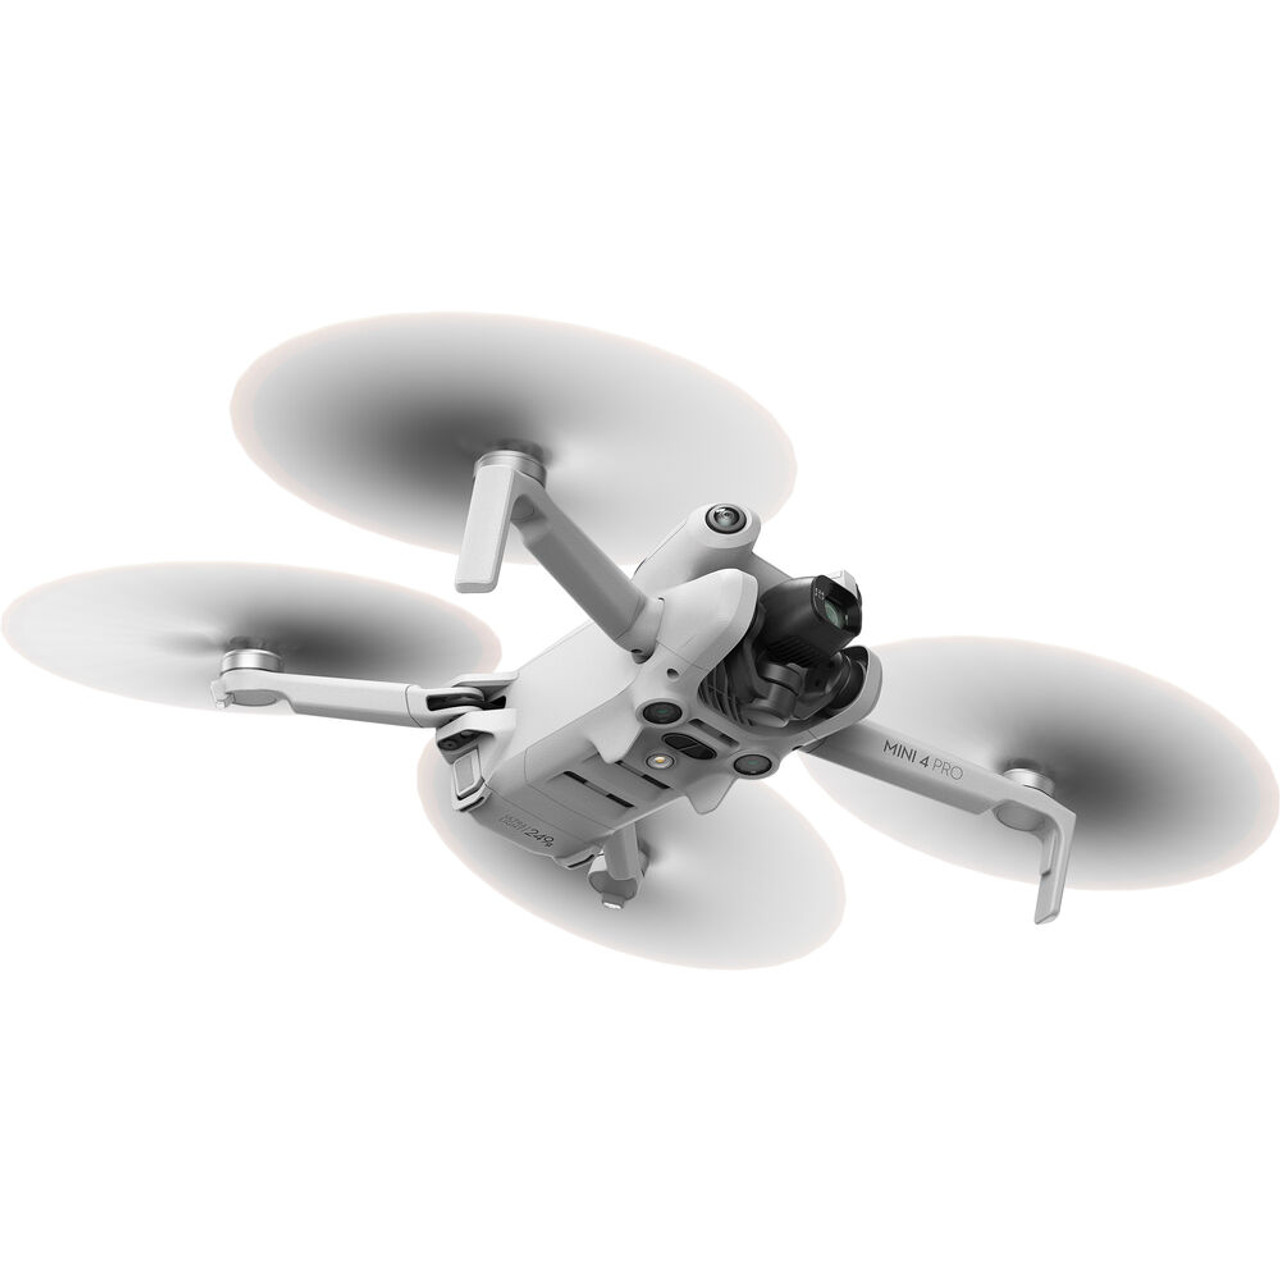 Drone DJI Mini 4 Pro (DJI RC 2)